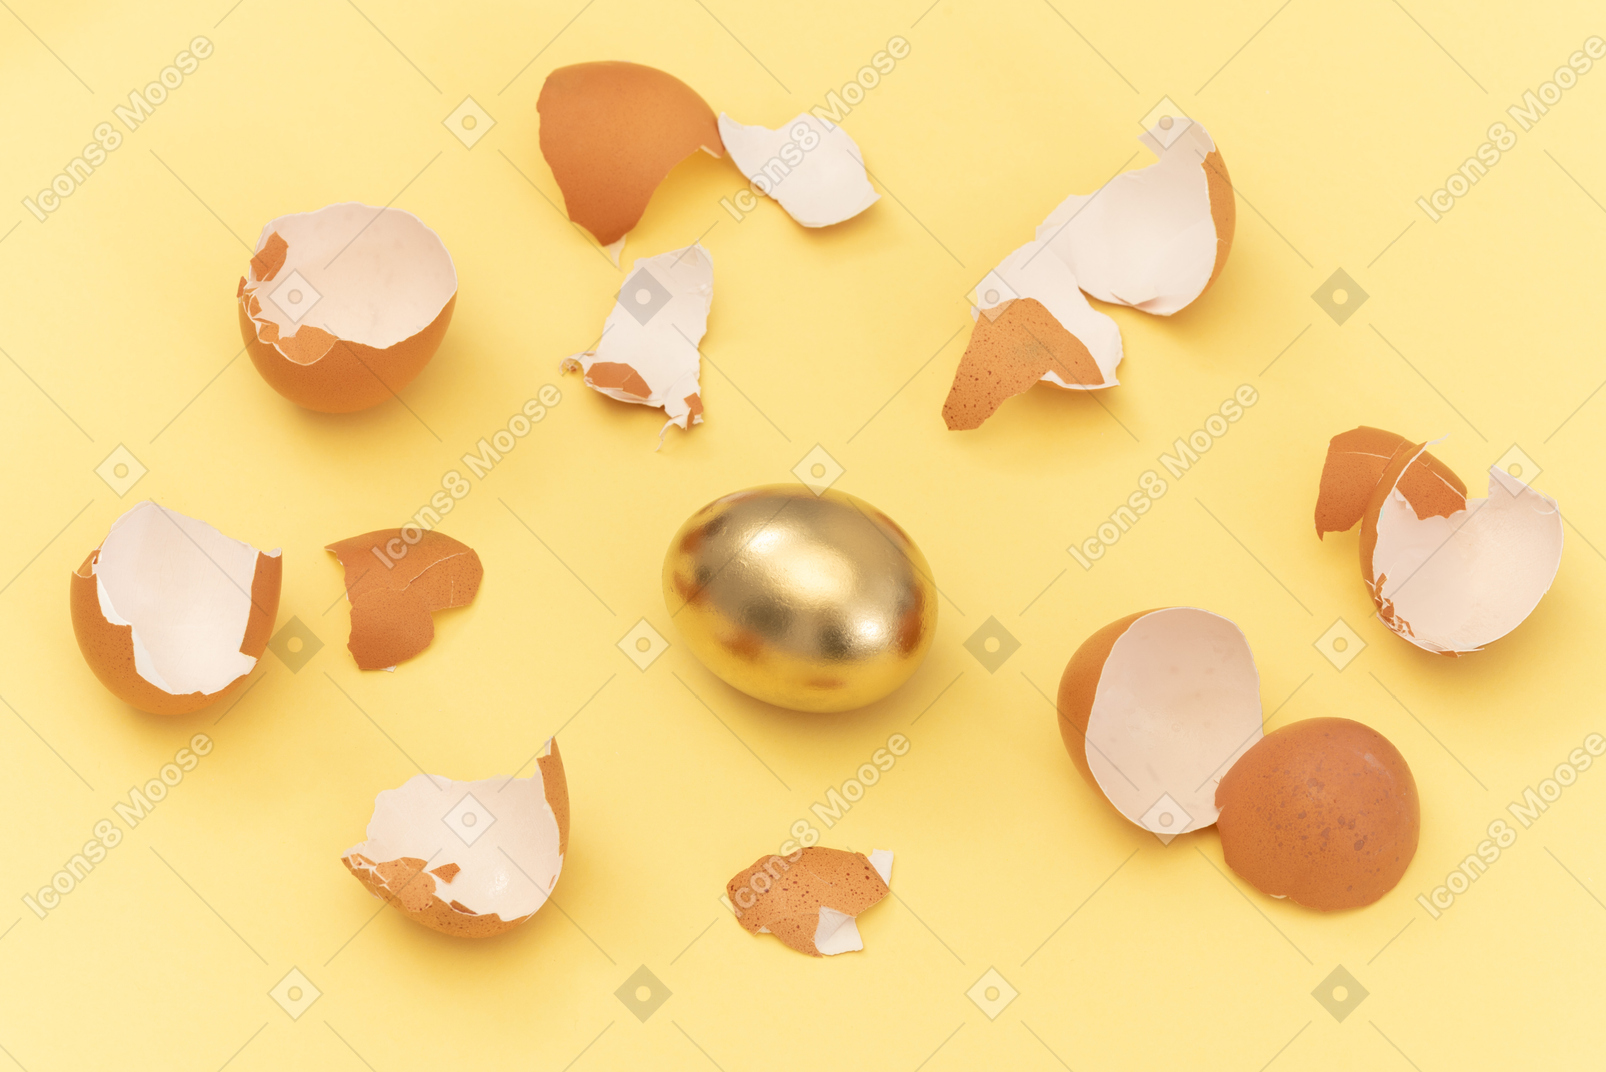 Golden egg among eggshells